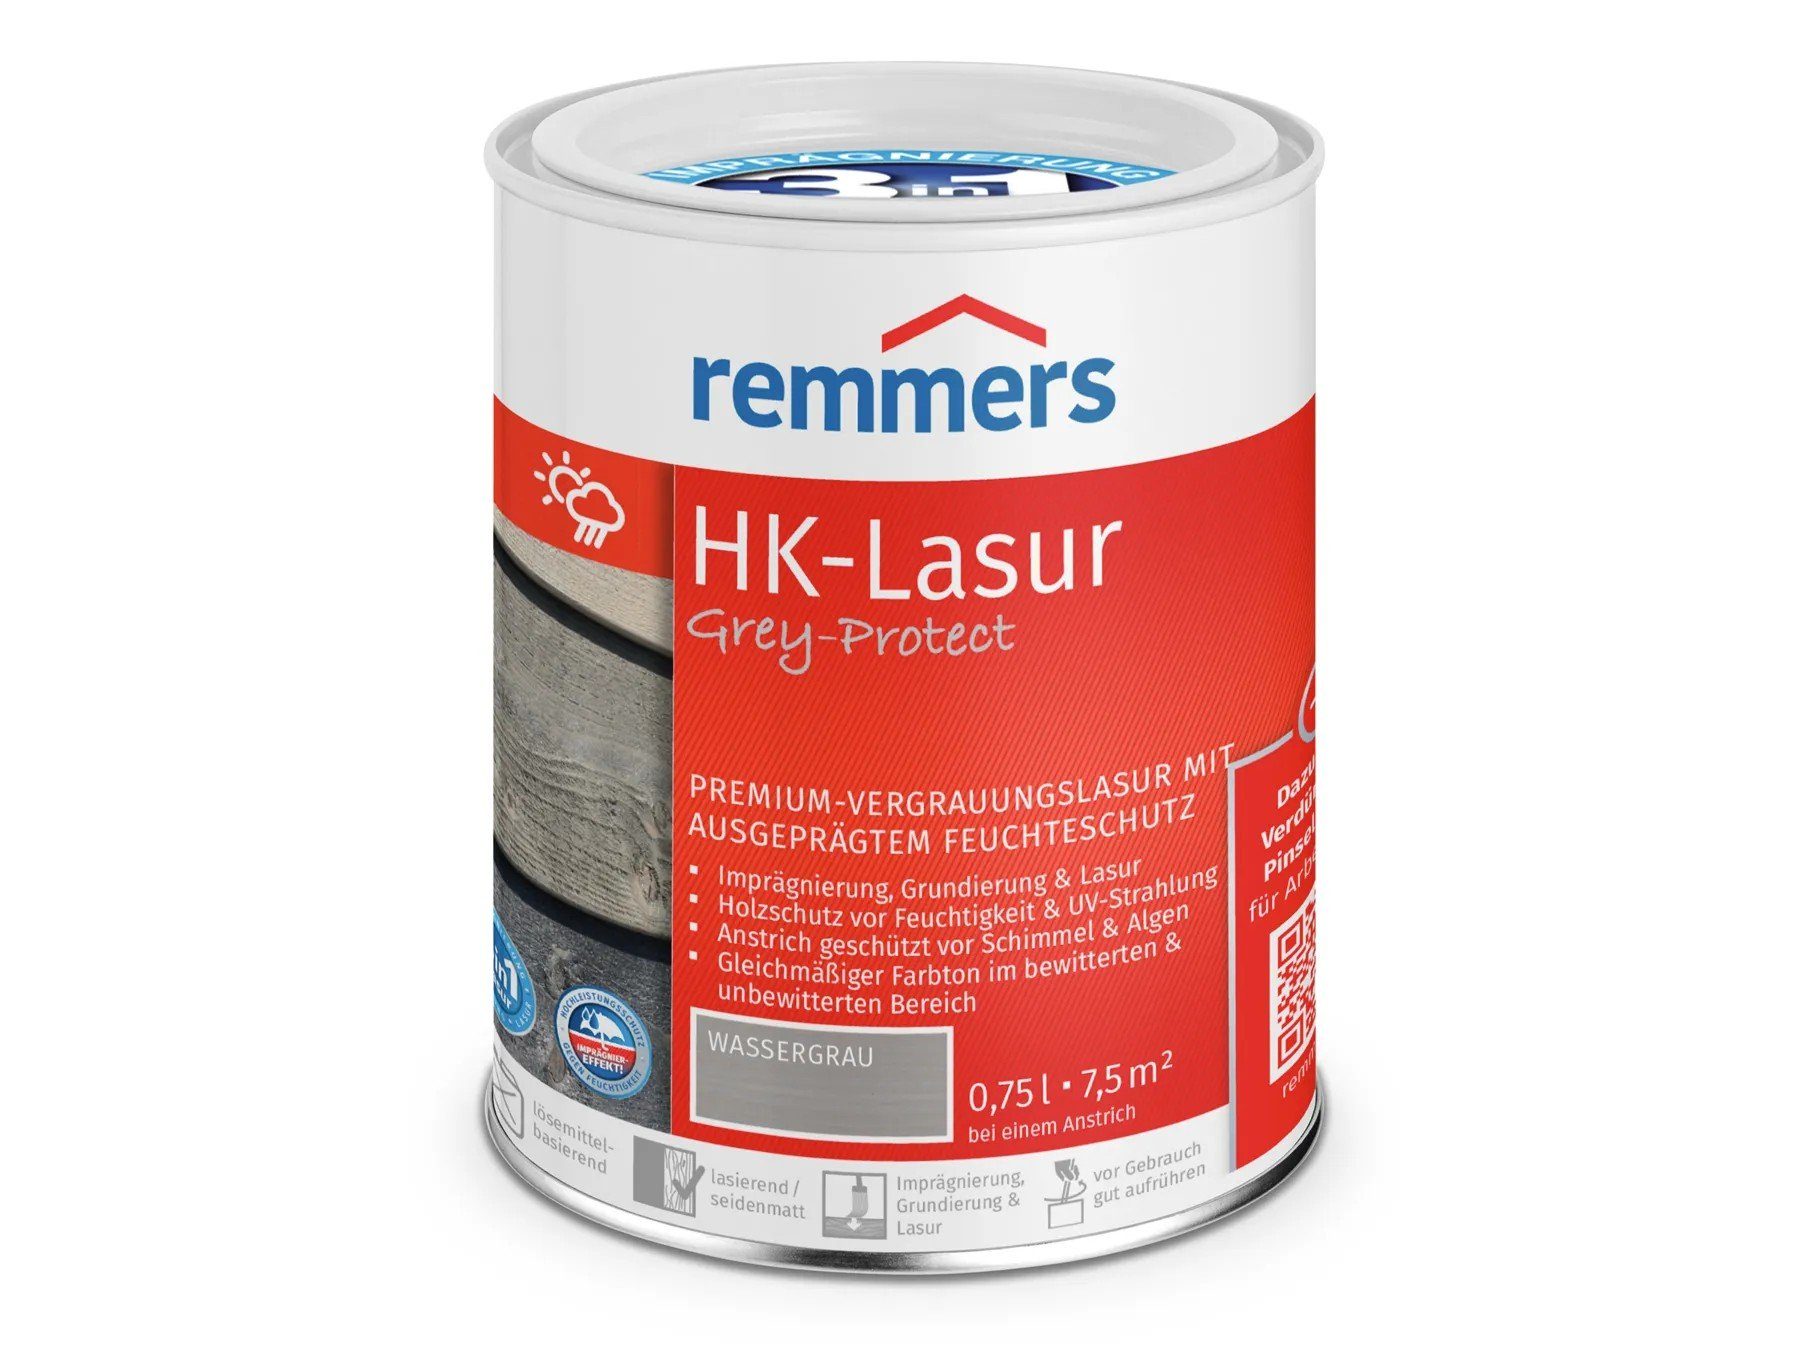 Remmers Holzschutzlasur HK-Lasur Grey-Protect wassergrau (FT-20924) 3in1